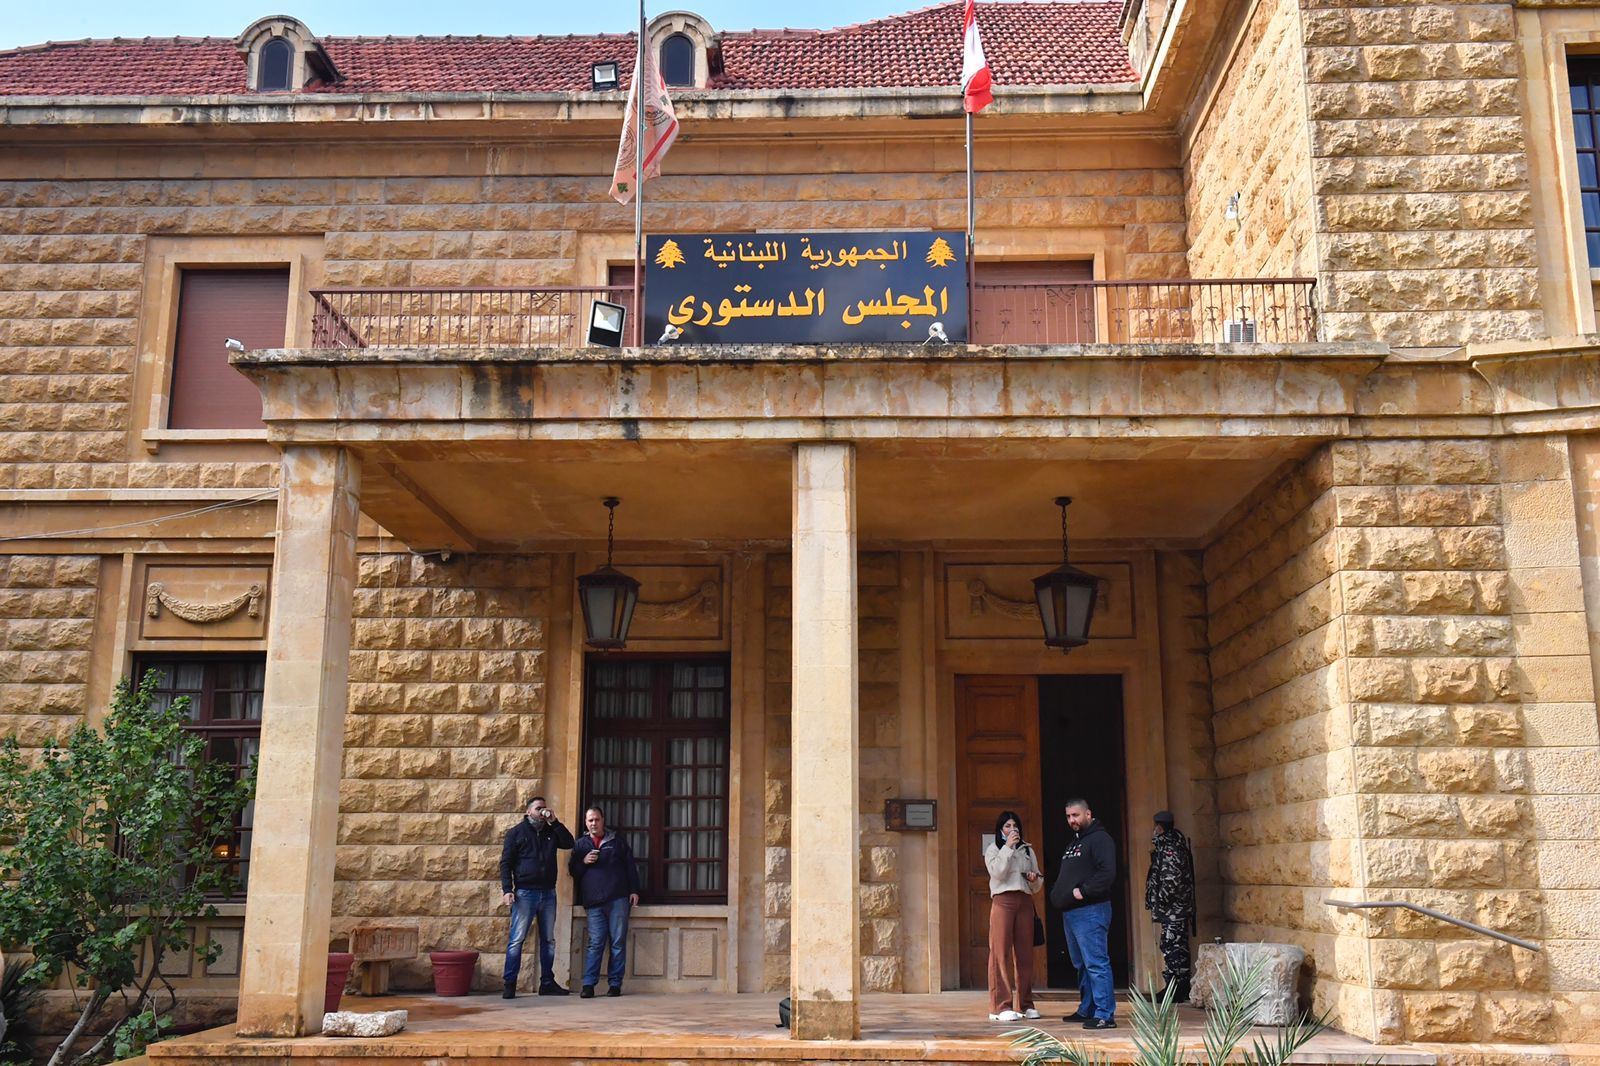 الانتخابات النيابية اللبنانية: "سقطة" للدستوري أم للتيار؟ وماذا كشف أبو غيدا لـ"جسور"؟